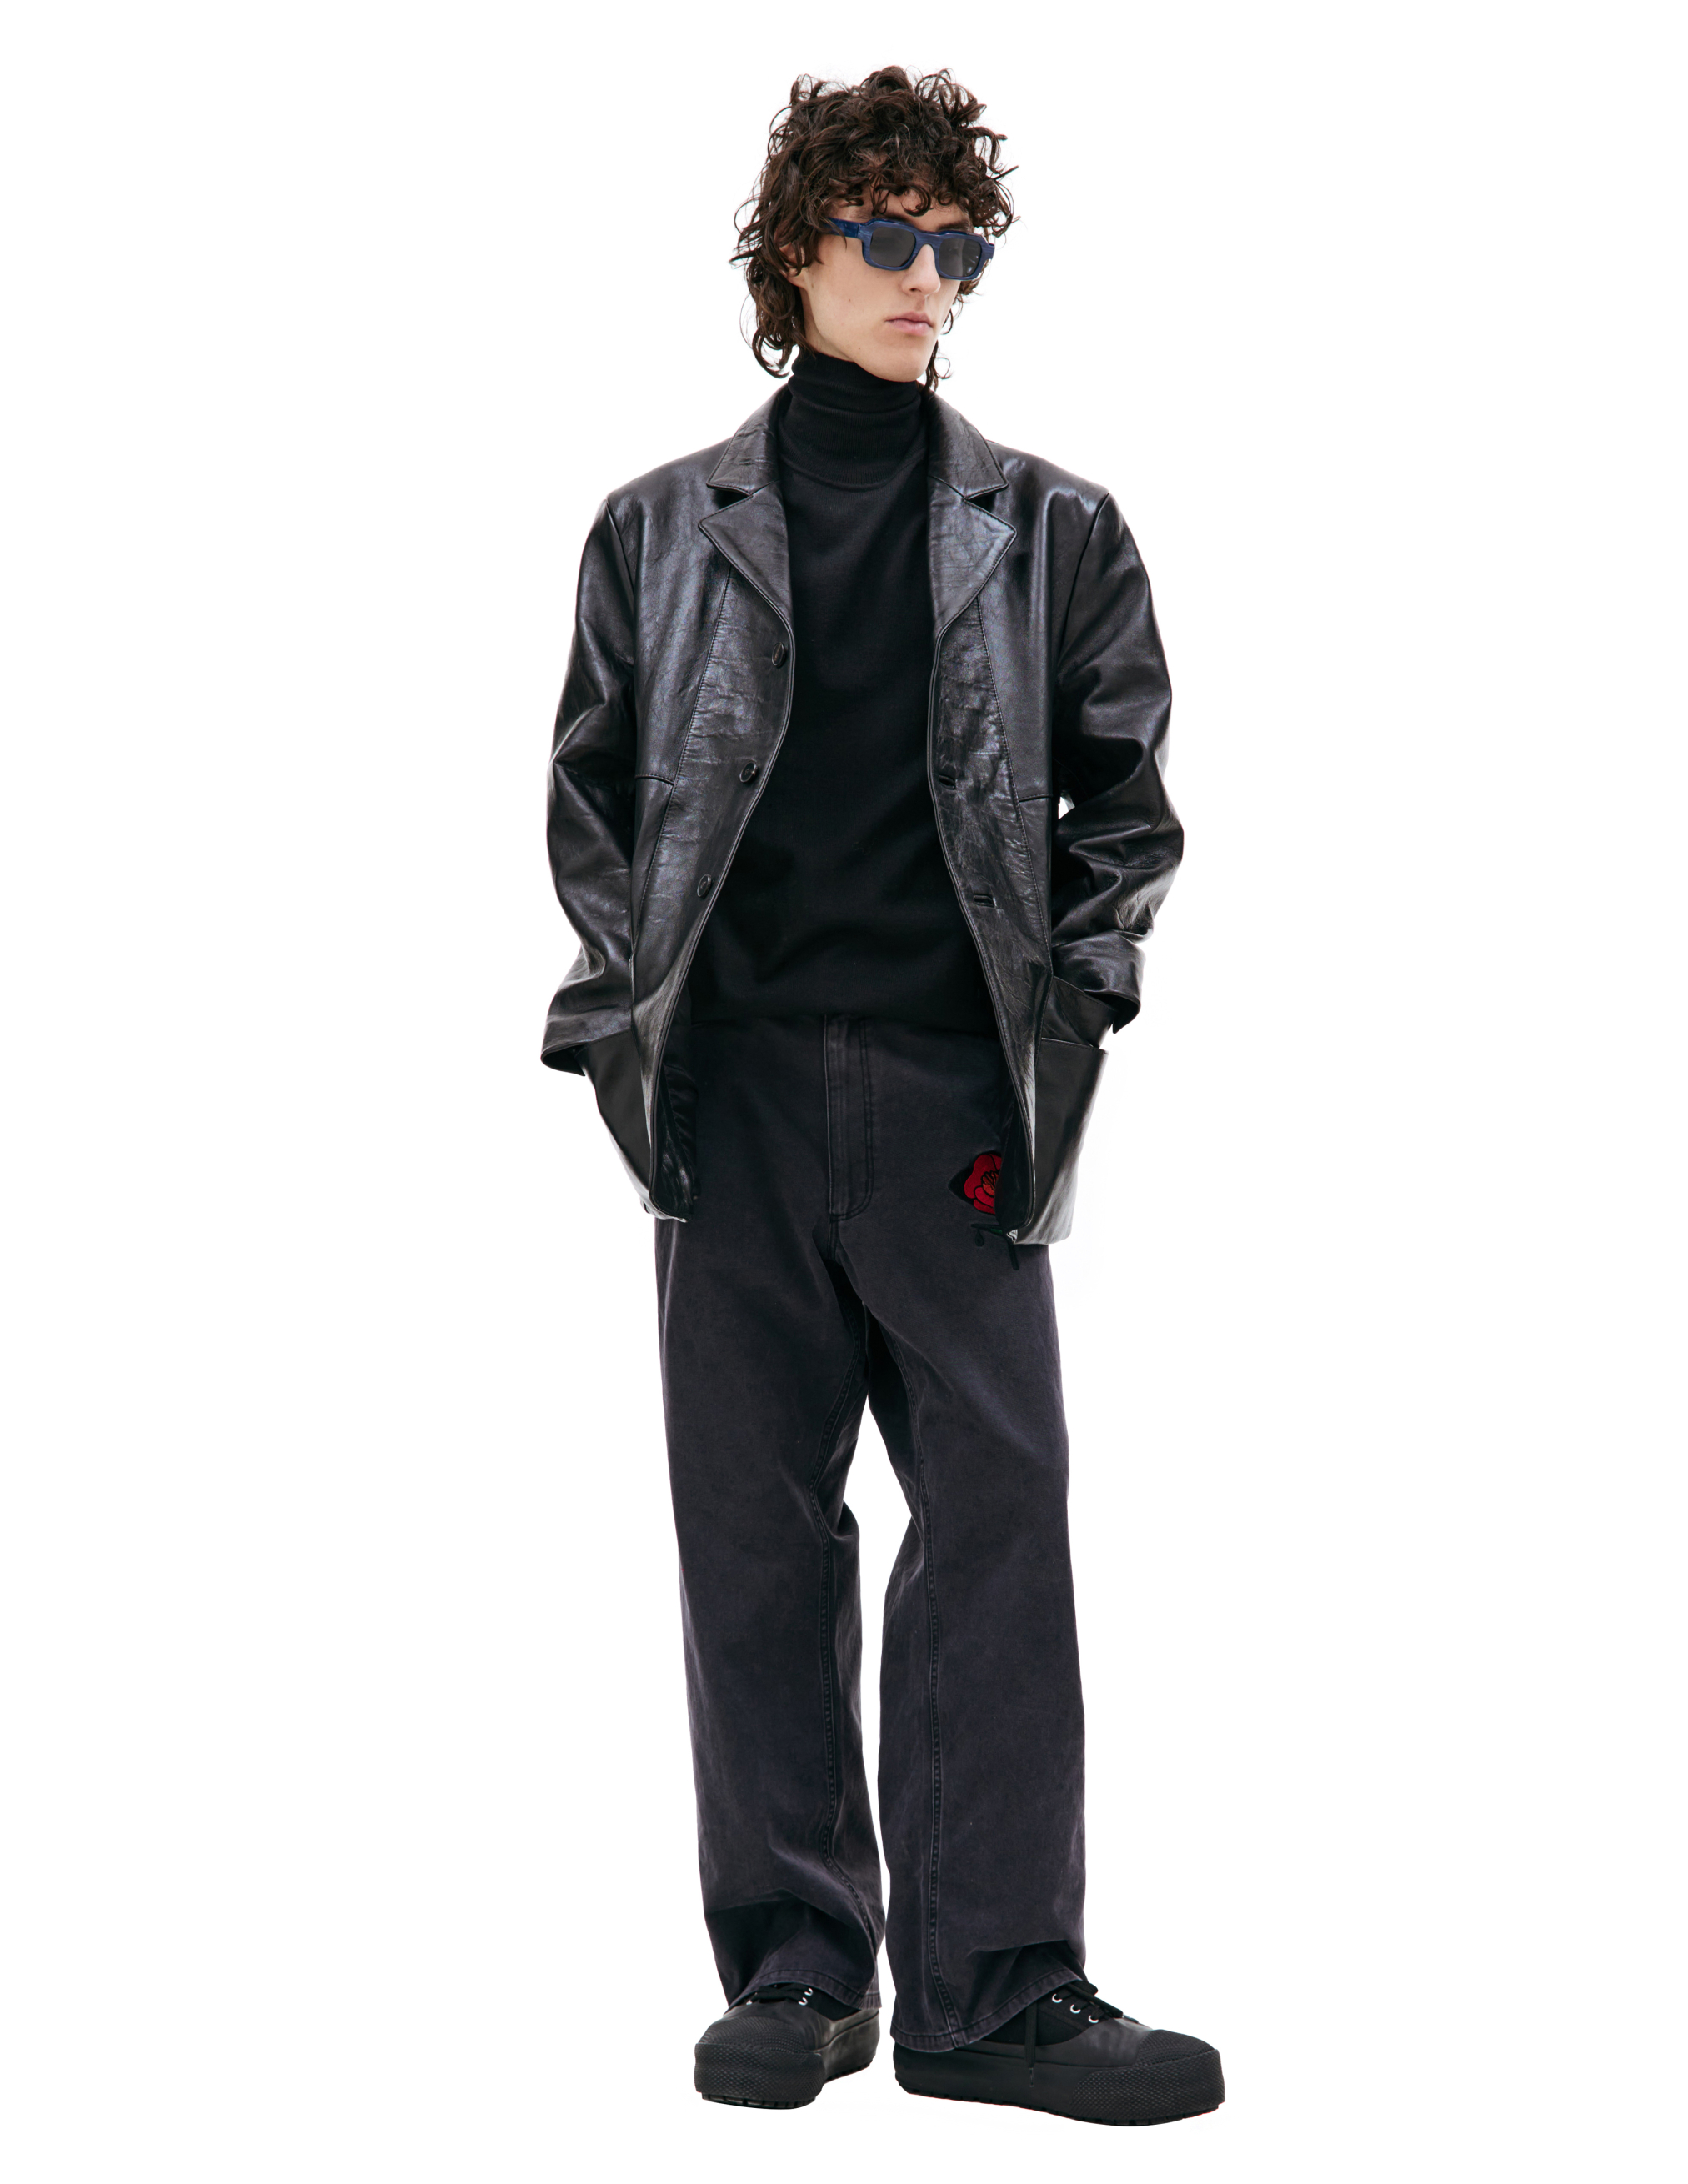 Черный кожаный пиджак Enfants Riches Deprimes 030-405, размер L;XL - фото 3